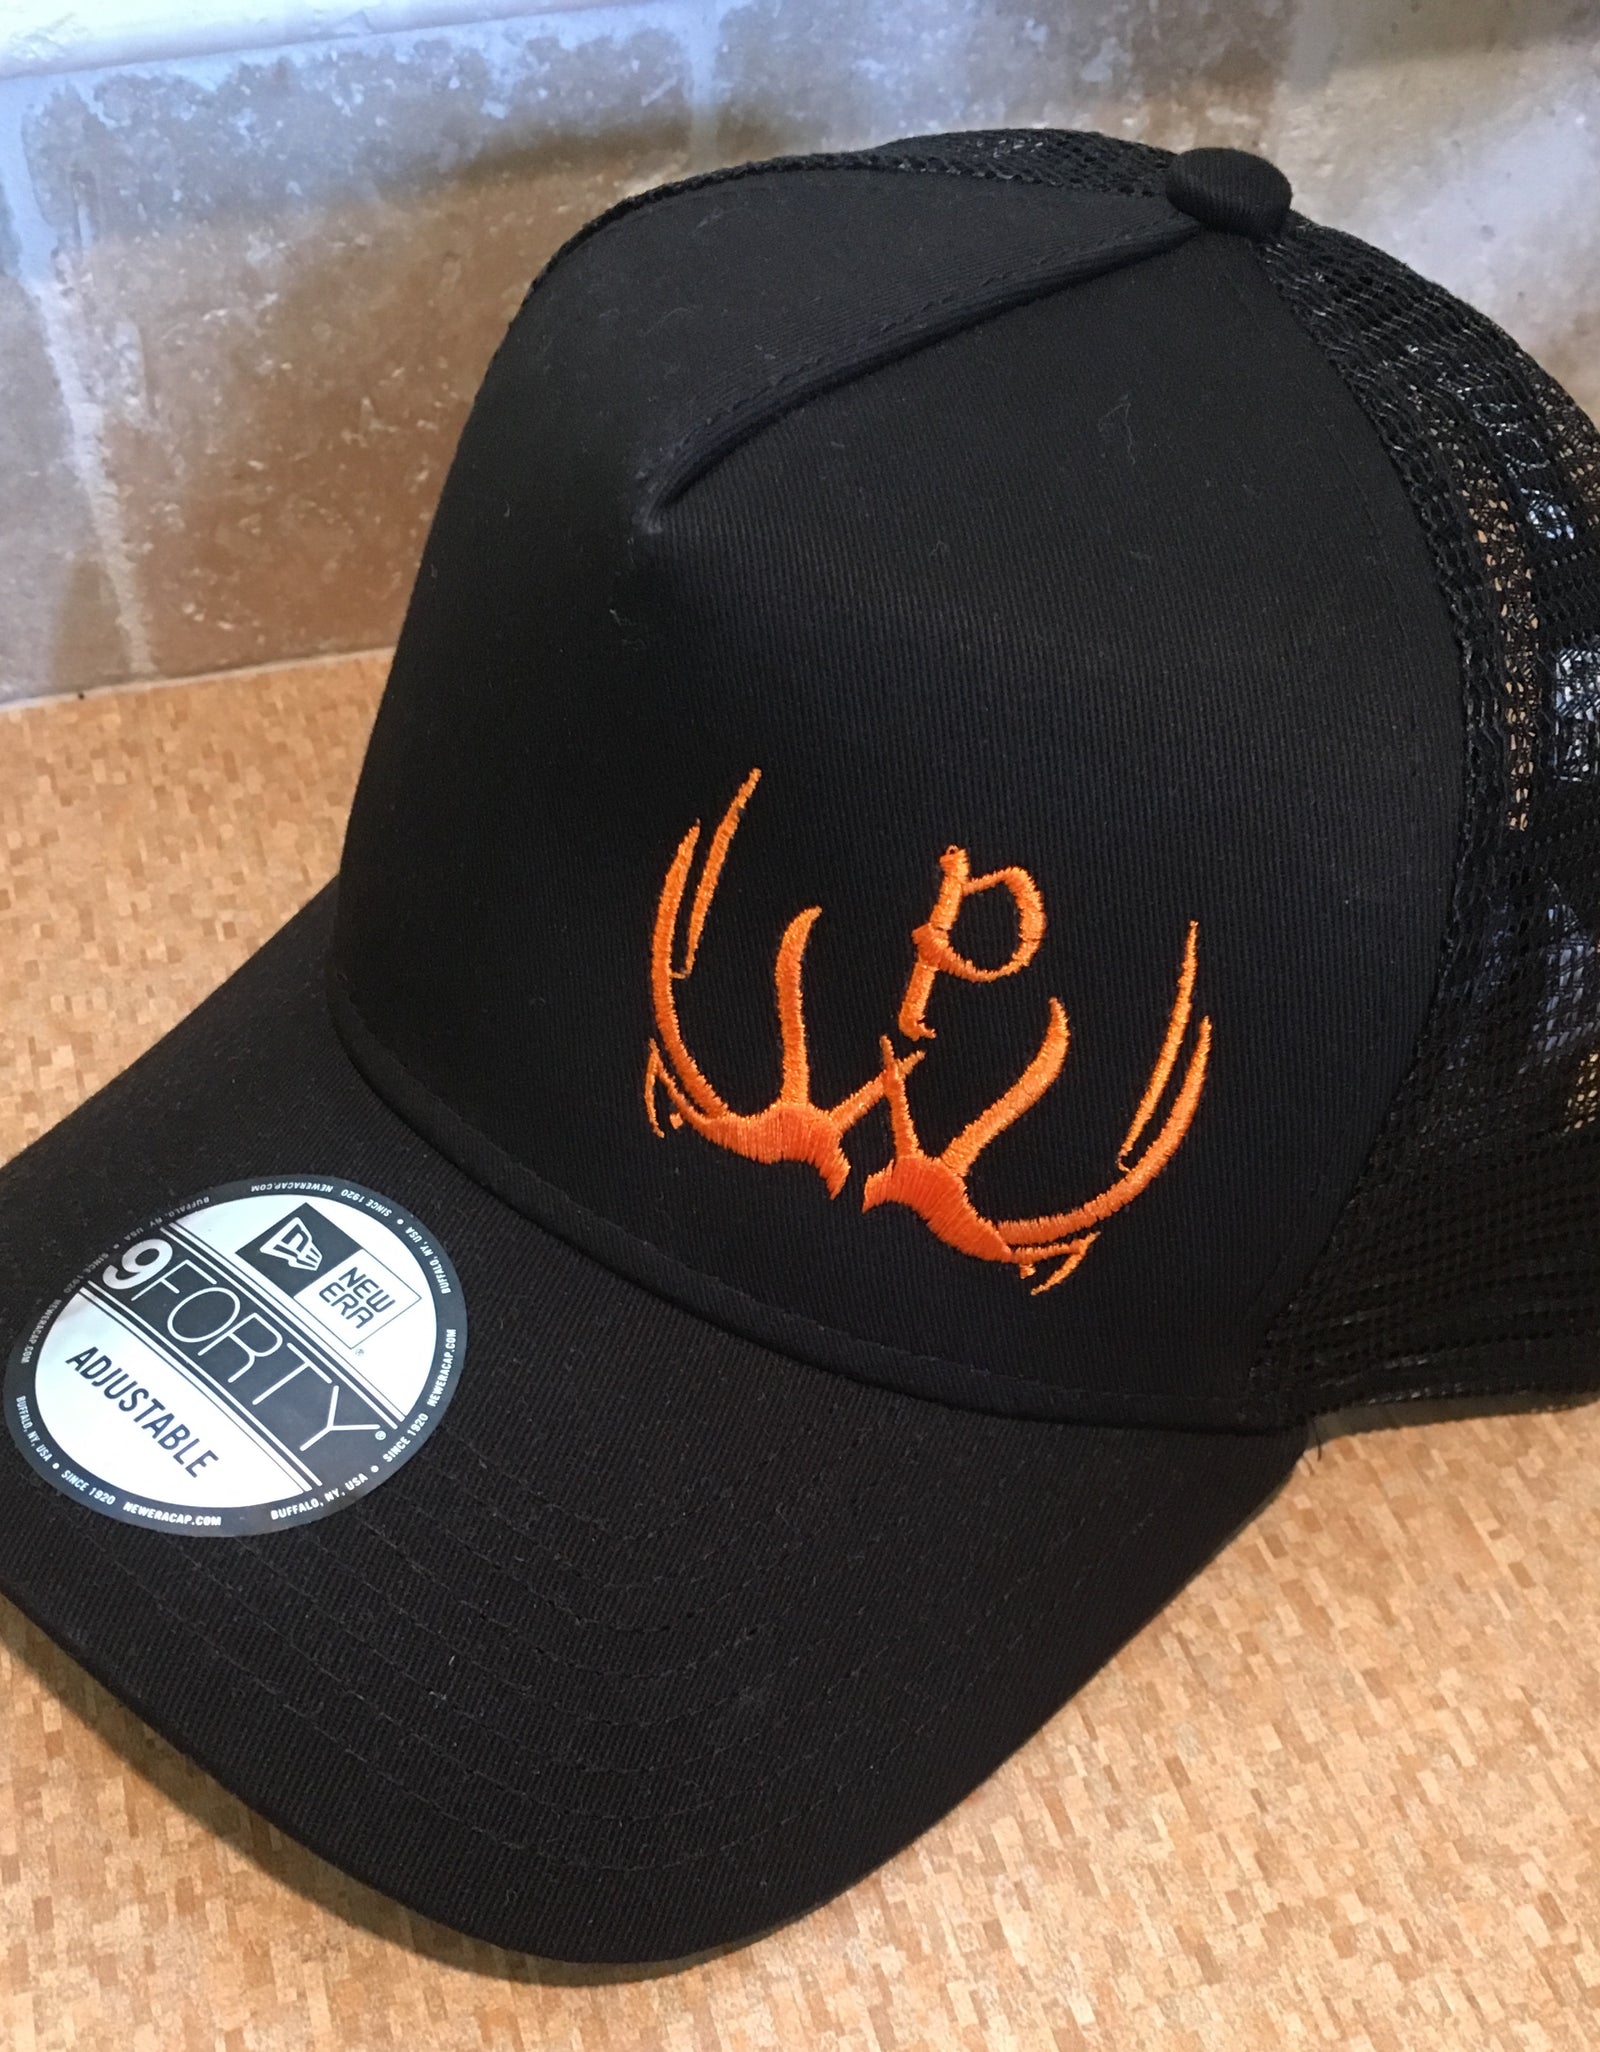 New Era Pursue The Wild Logo Hat - Black/Black & Orange